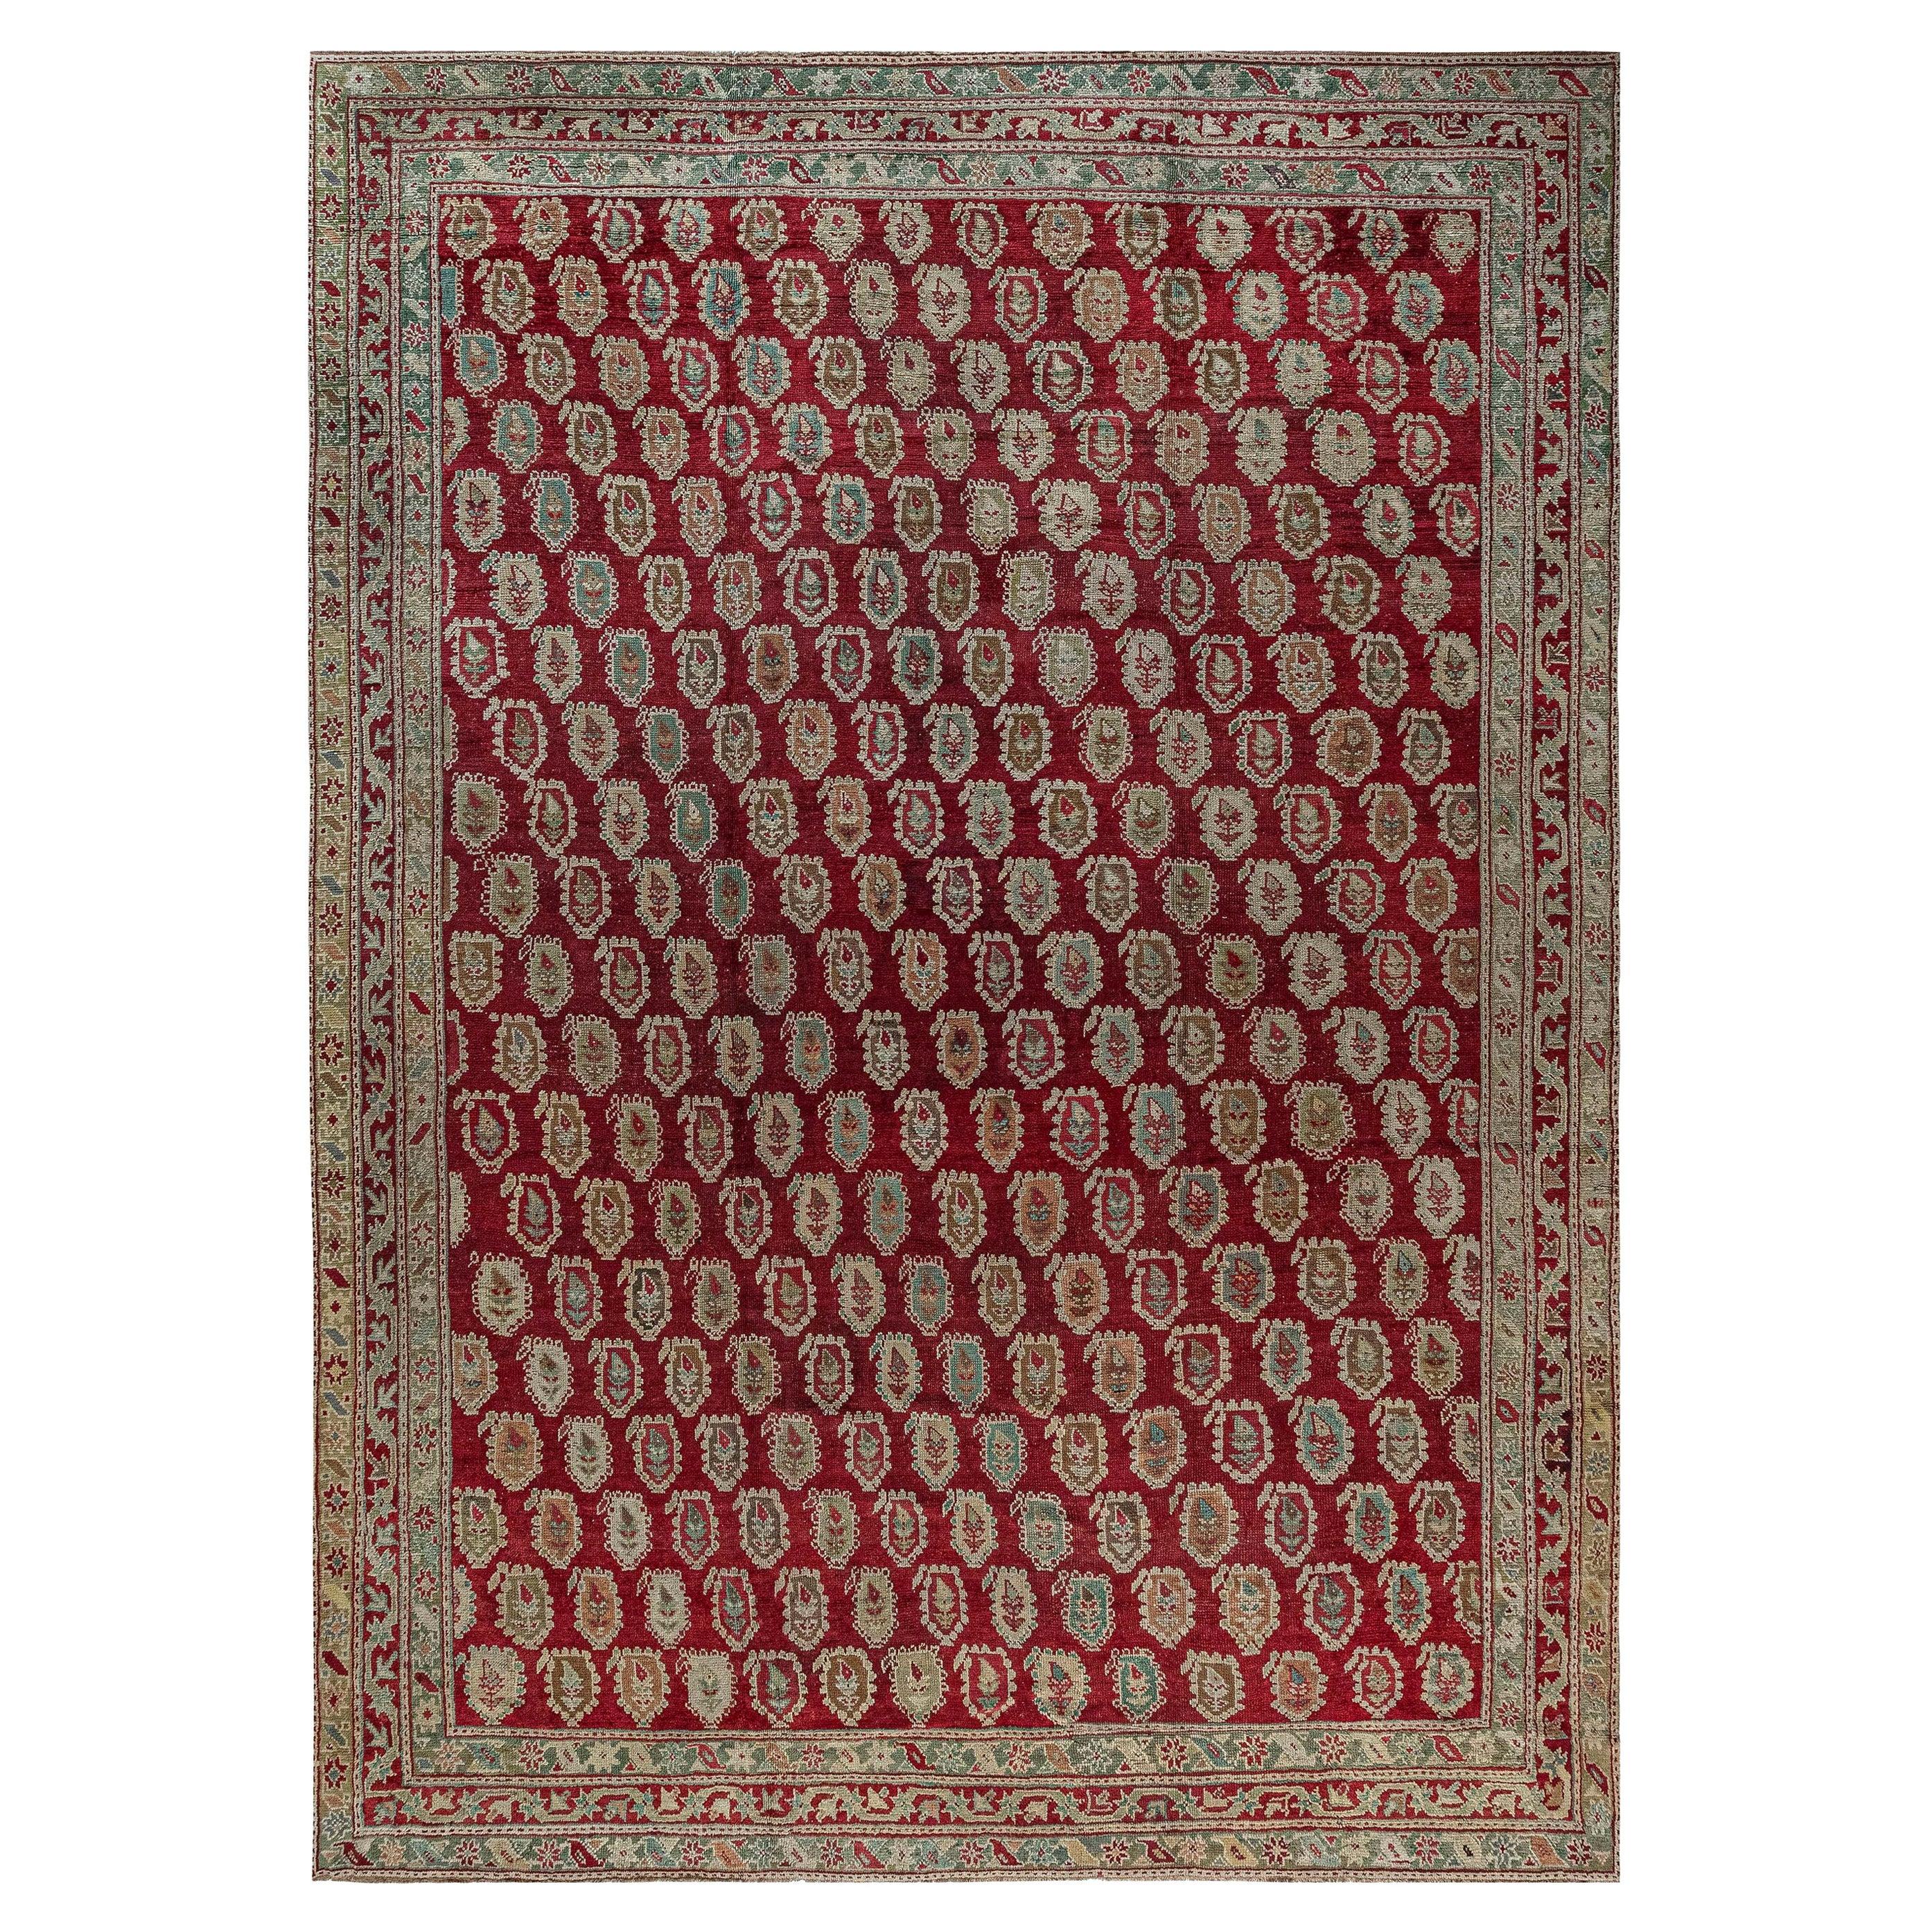 19th Century Turkish Oushak Red Wool Carpet